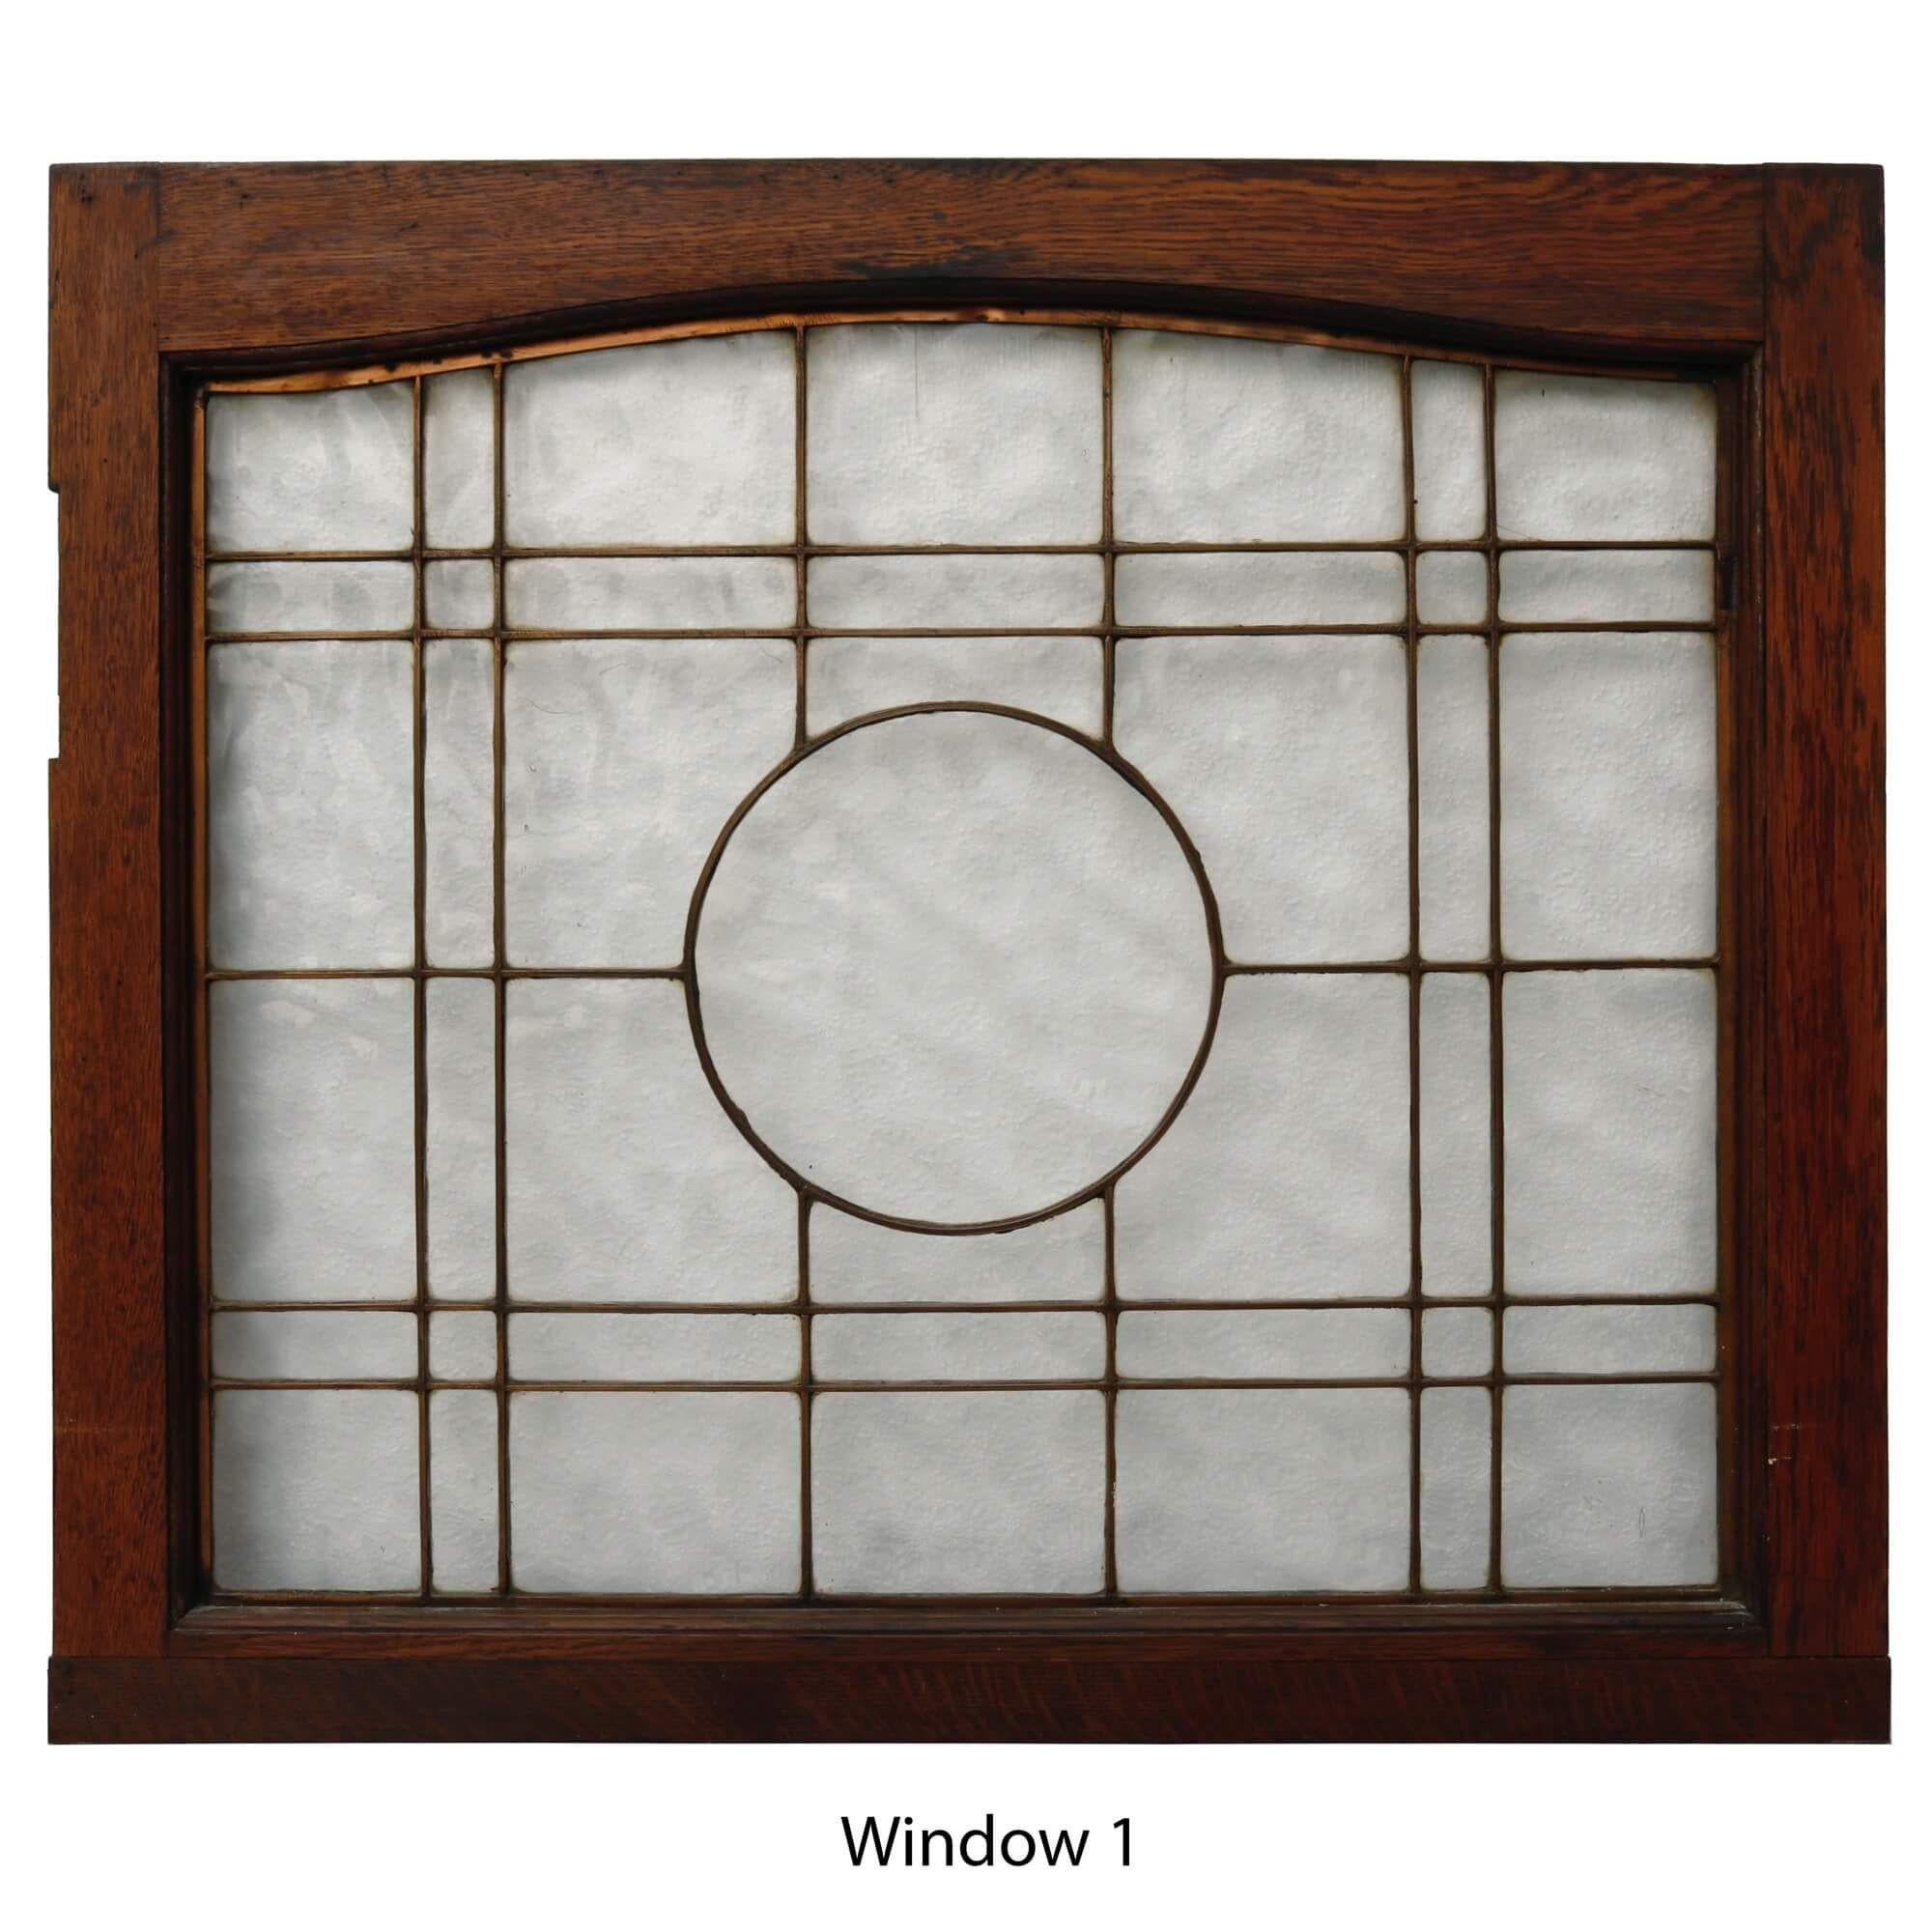 Un ensemble élégant de 4 fenêtres en cuivre récupérées datant du début des années 1900. Chaque fenêtre se compose d'un cadre en chêne, d'un verre texturé transparent et d'un vitrage en cuivre qui s'articule autour d'une vitre circulaire au centre.